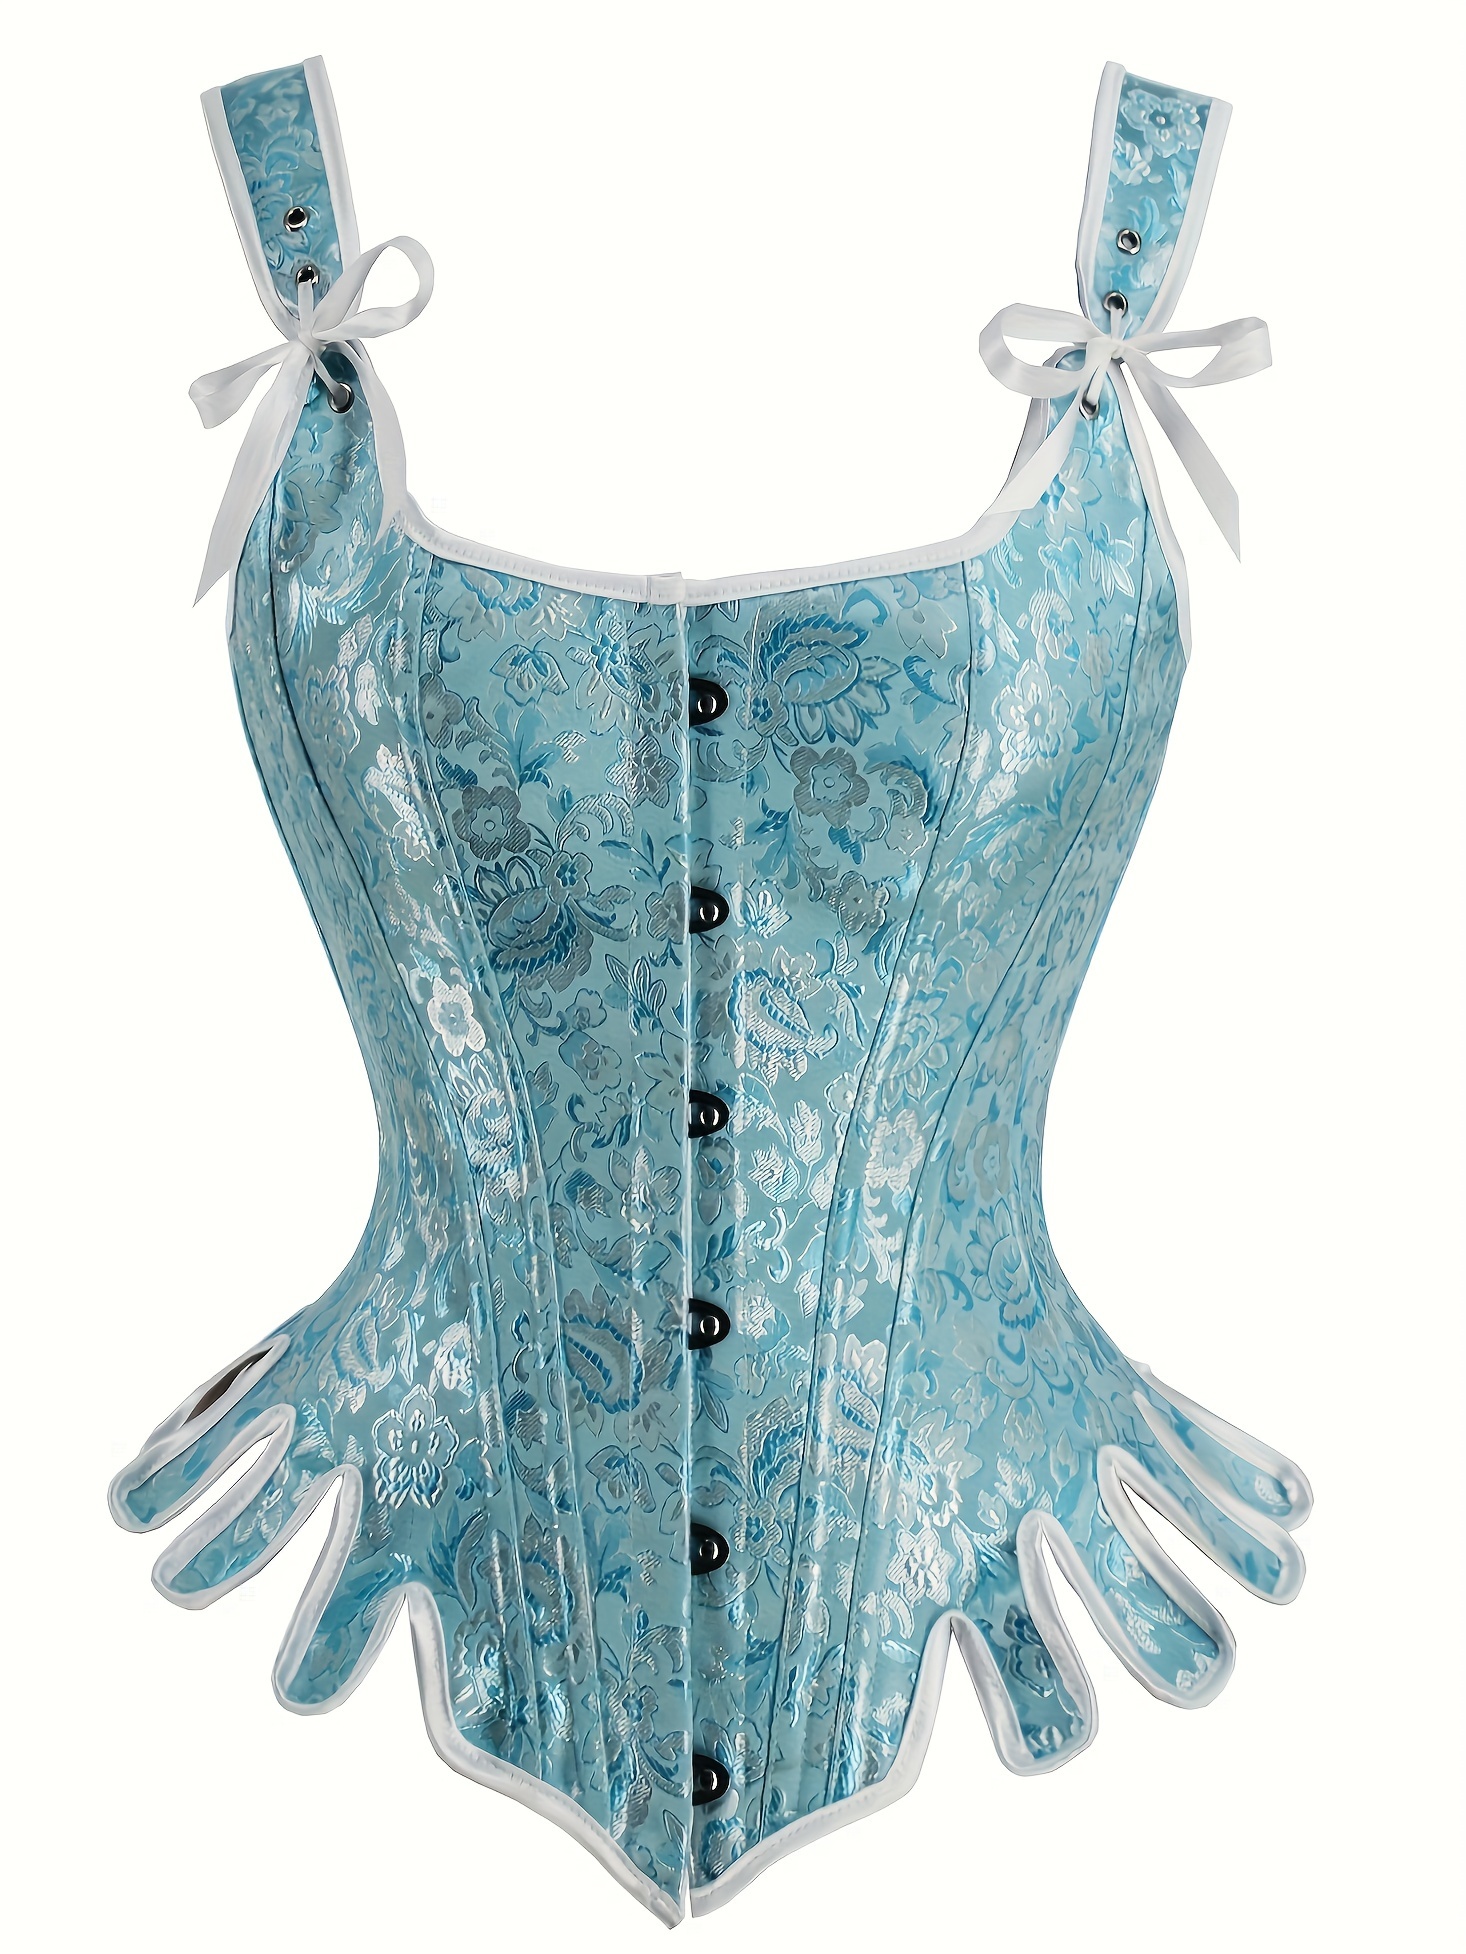 Curea vintage pentru femei, stil gotic steampunk, corsete overbust de tip stays în stilul anilor 1780